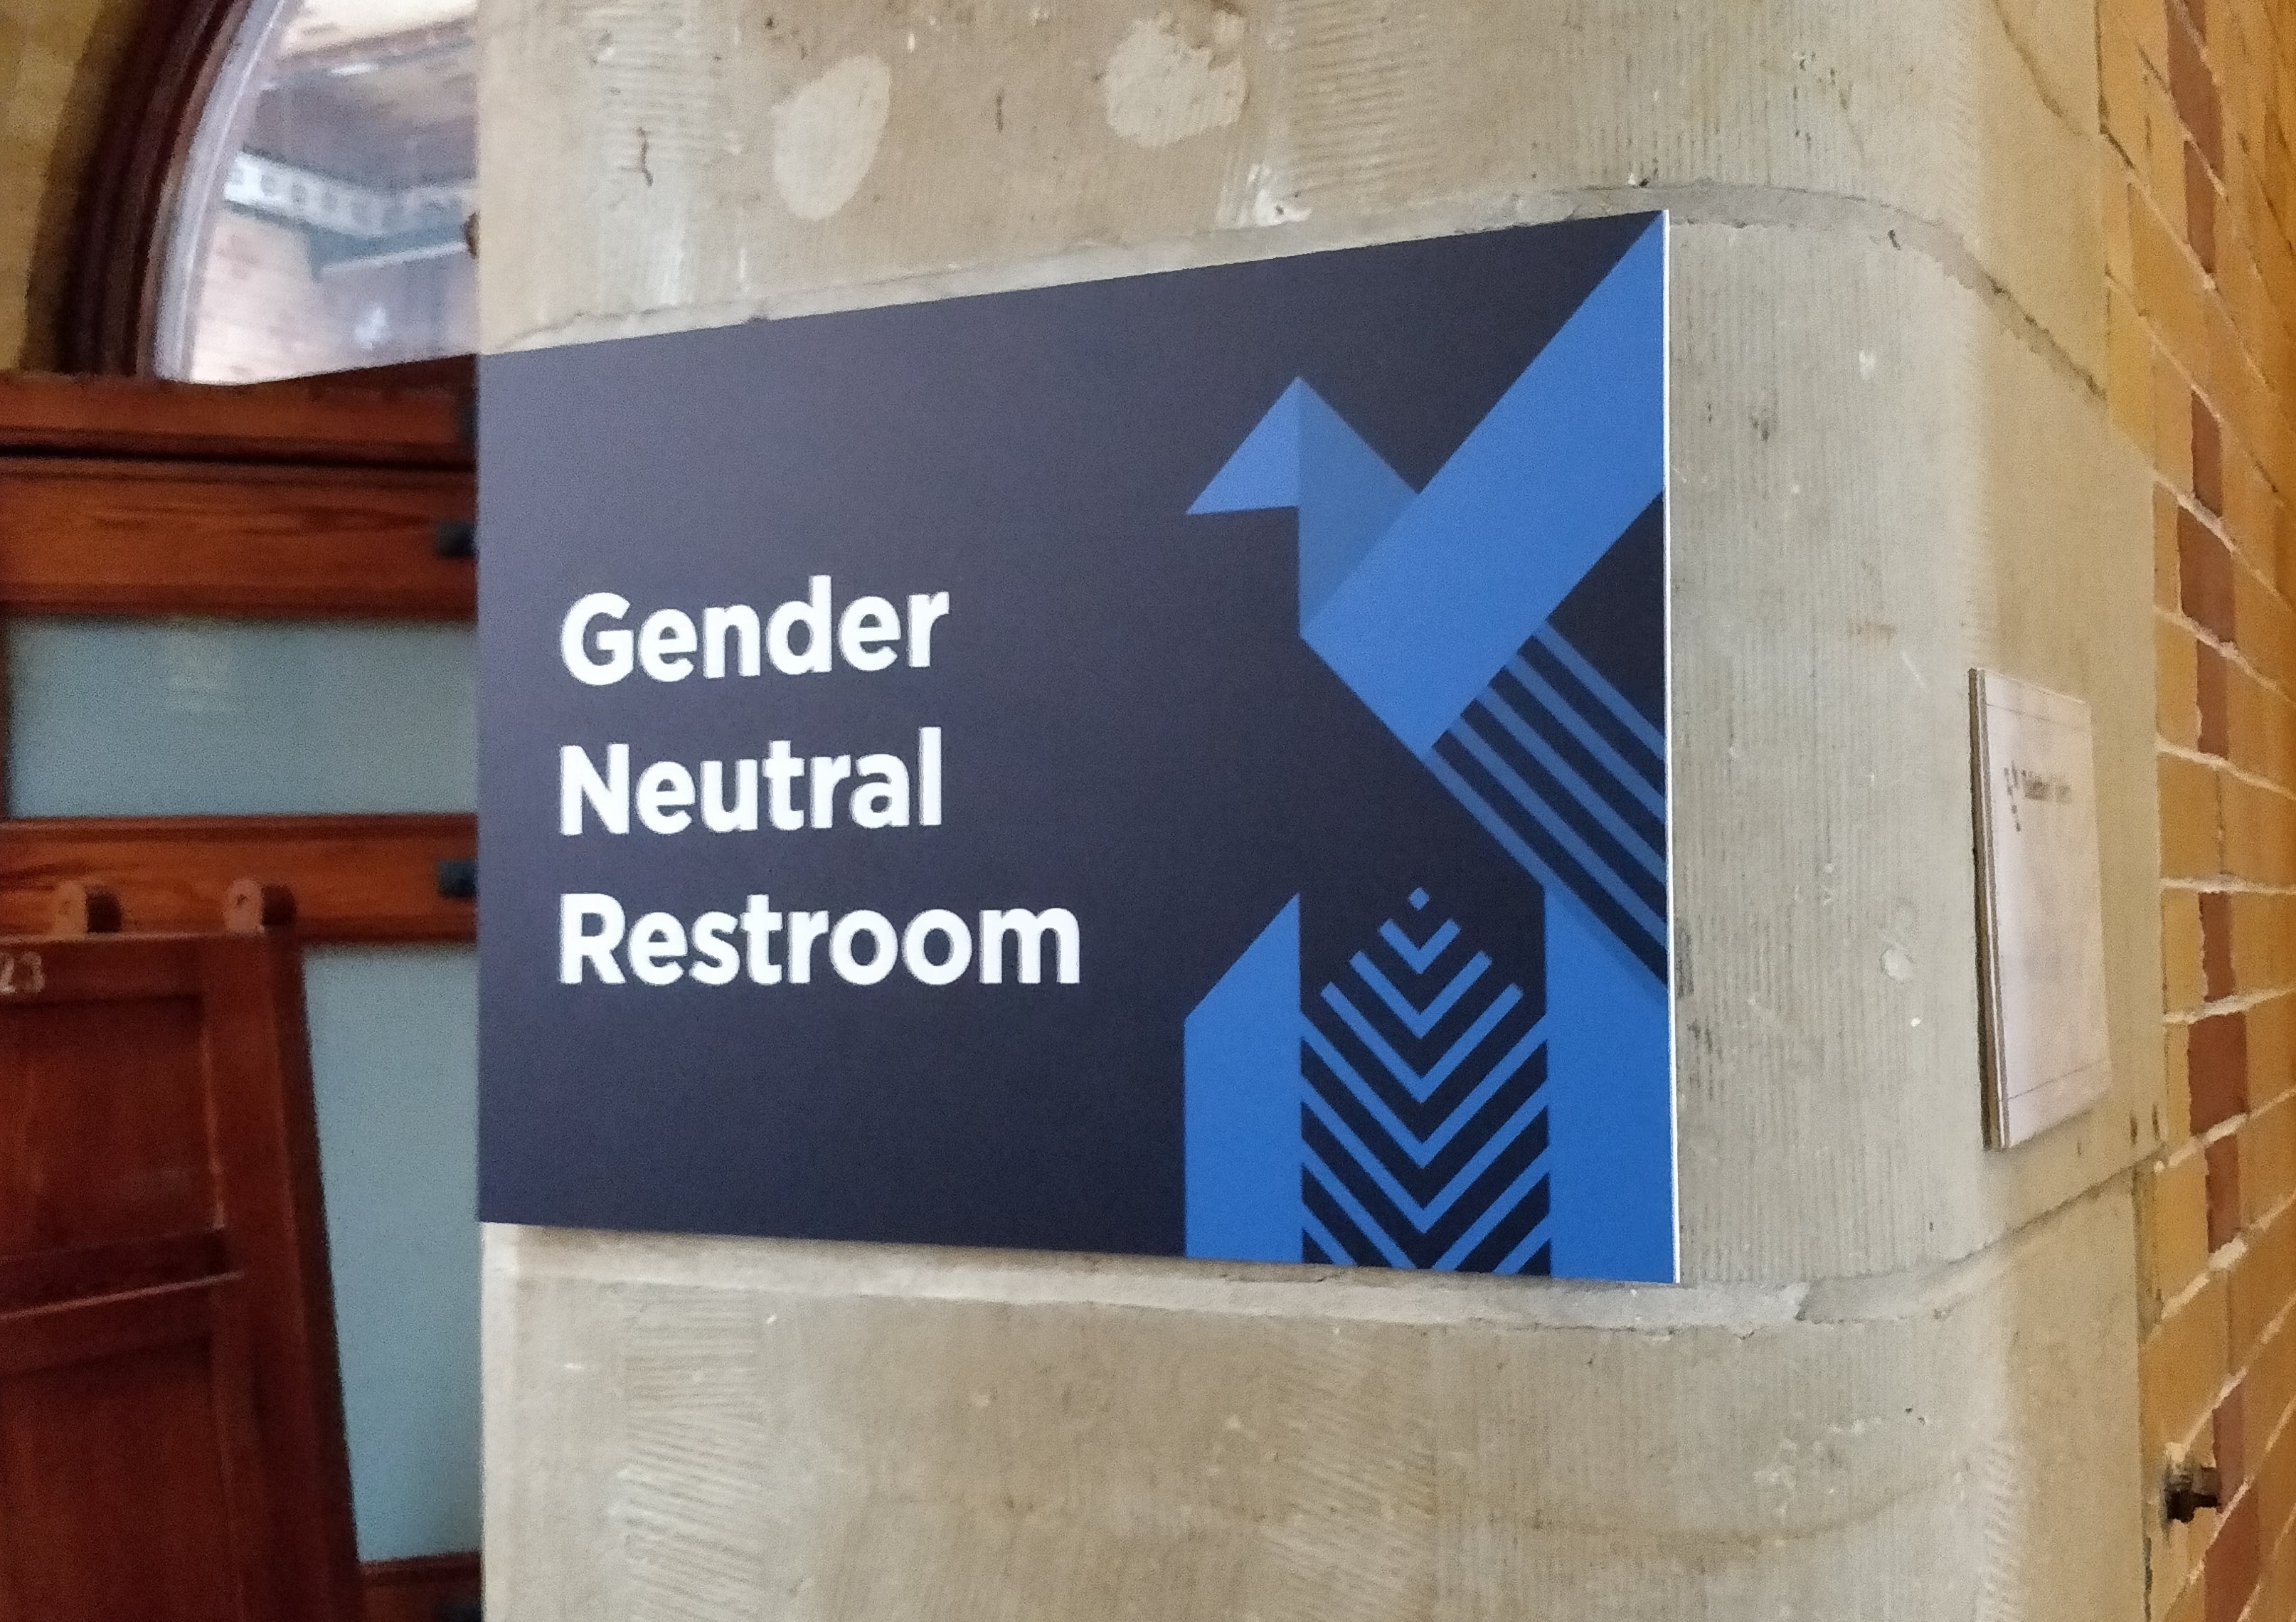 “Gender Neutral Restrooms” sign